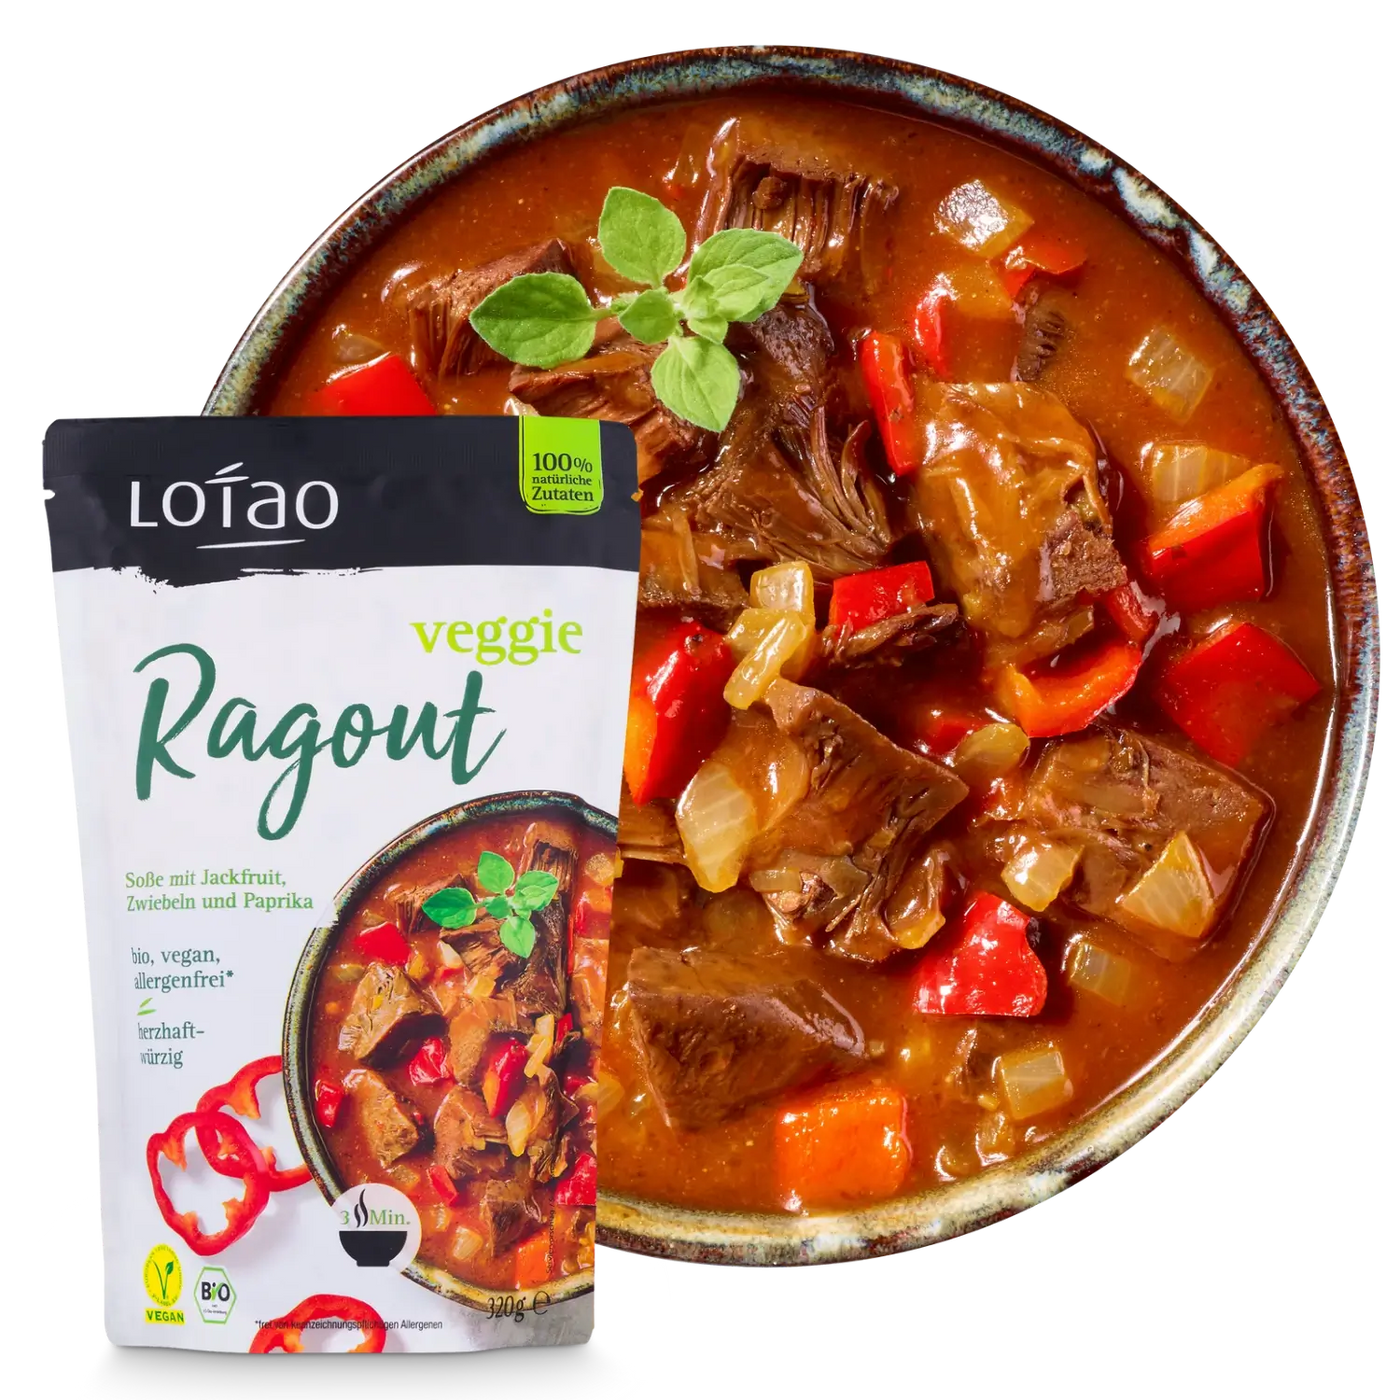 Bio-vegane Fertigsauce Veggie Ragout Sosse von Lotao zubereitet auf Teller mit Packung